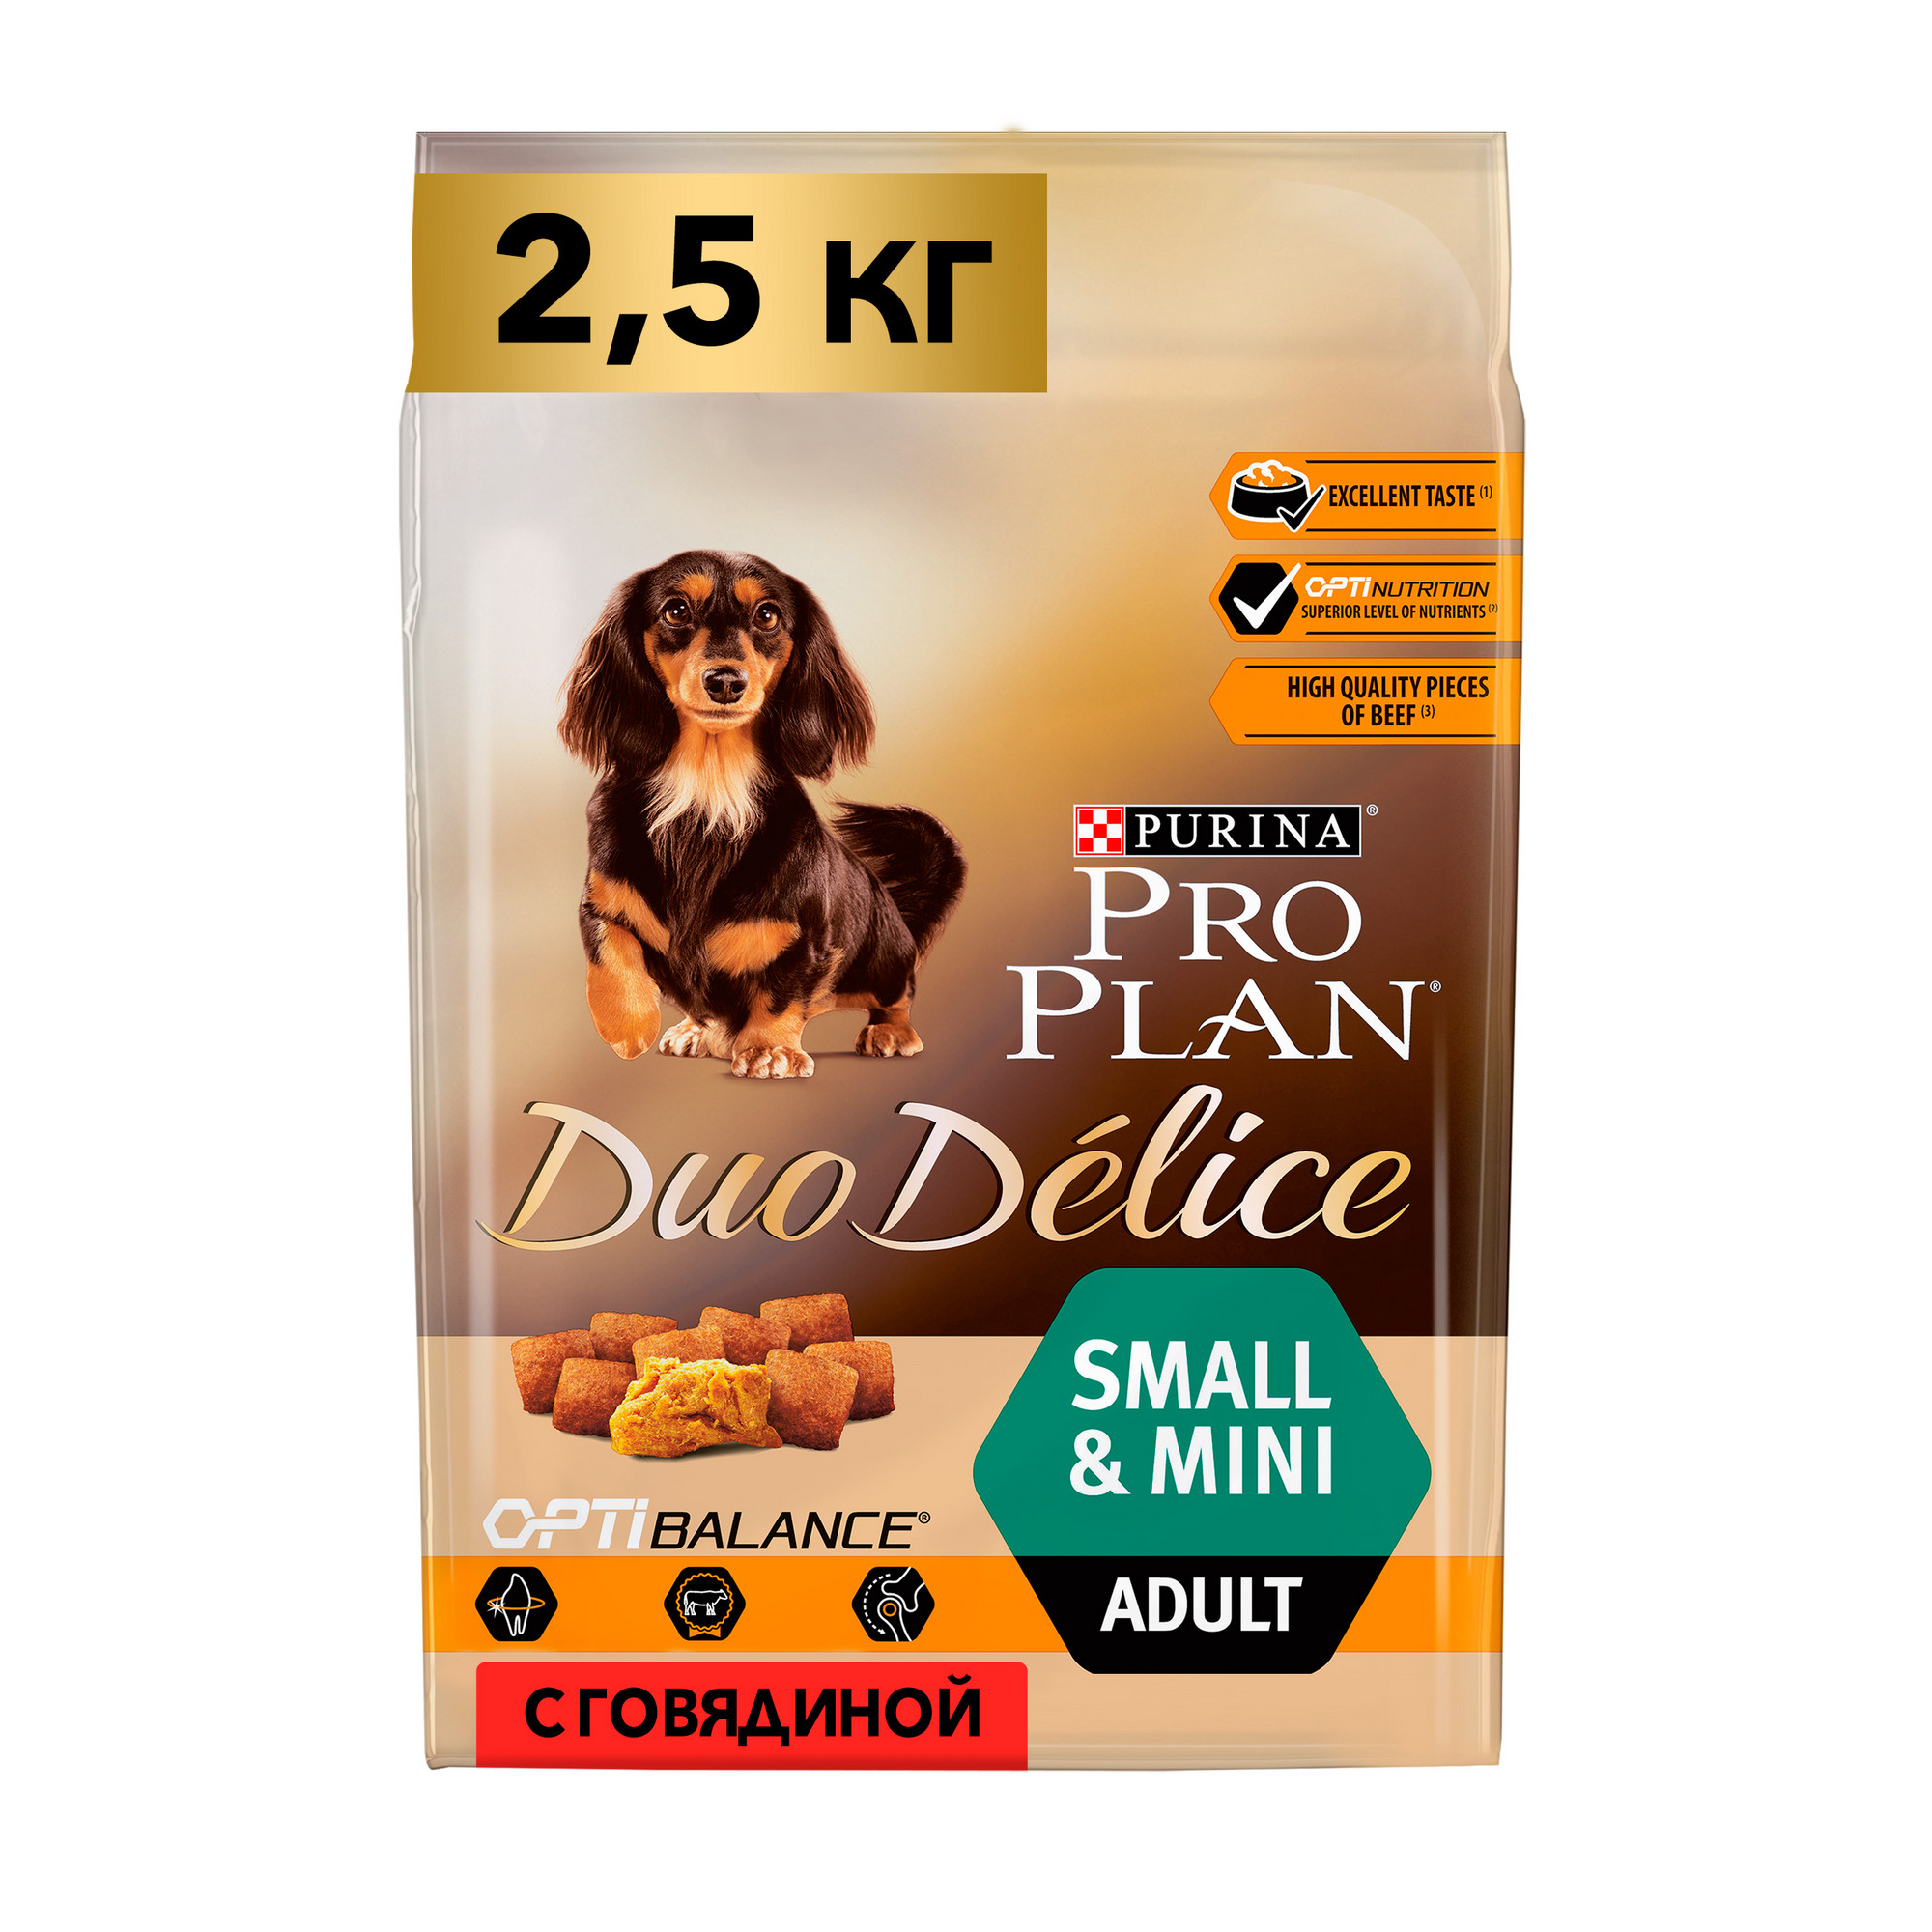 Купить сухой корм для собак PRO PLAN Duo Delice Small&Mini Adult, говядина, 2,5кг, цены на Мегамаркет | Артикул: 600001213134